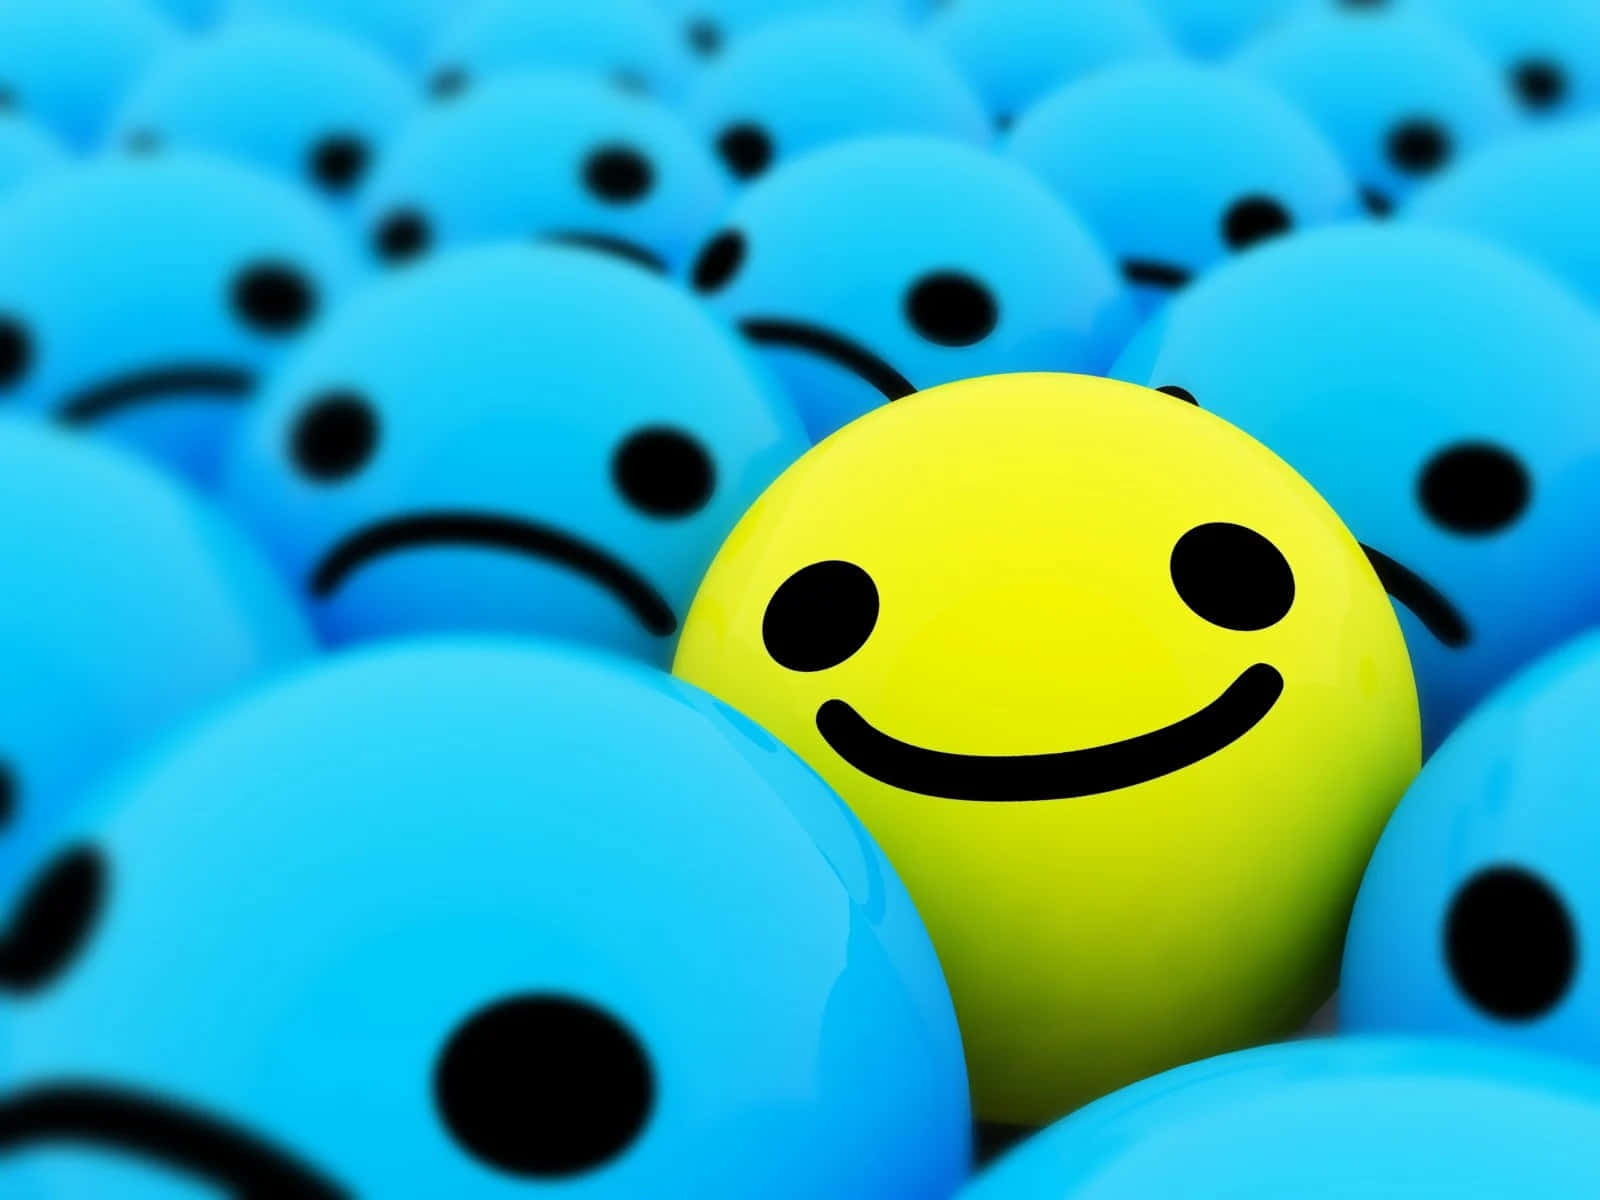 Unacara Sonriente Amarilla Está Parada En Medio De Un Grupo De Bolas Azules.